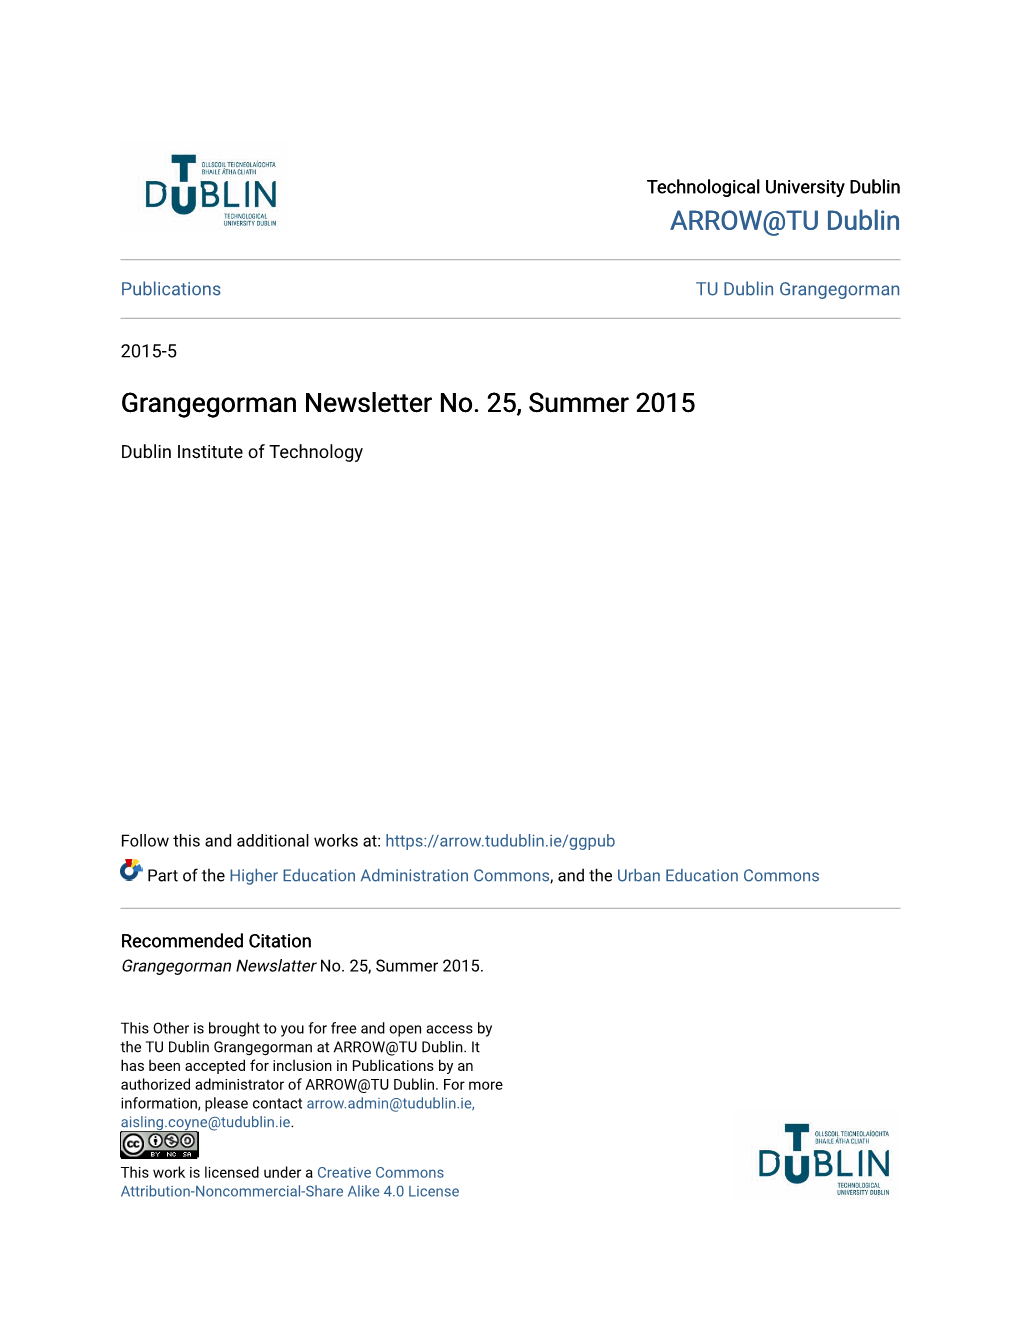 Grangegorman Newsletter No. 25, Summer 2015